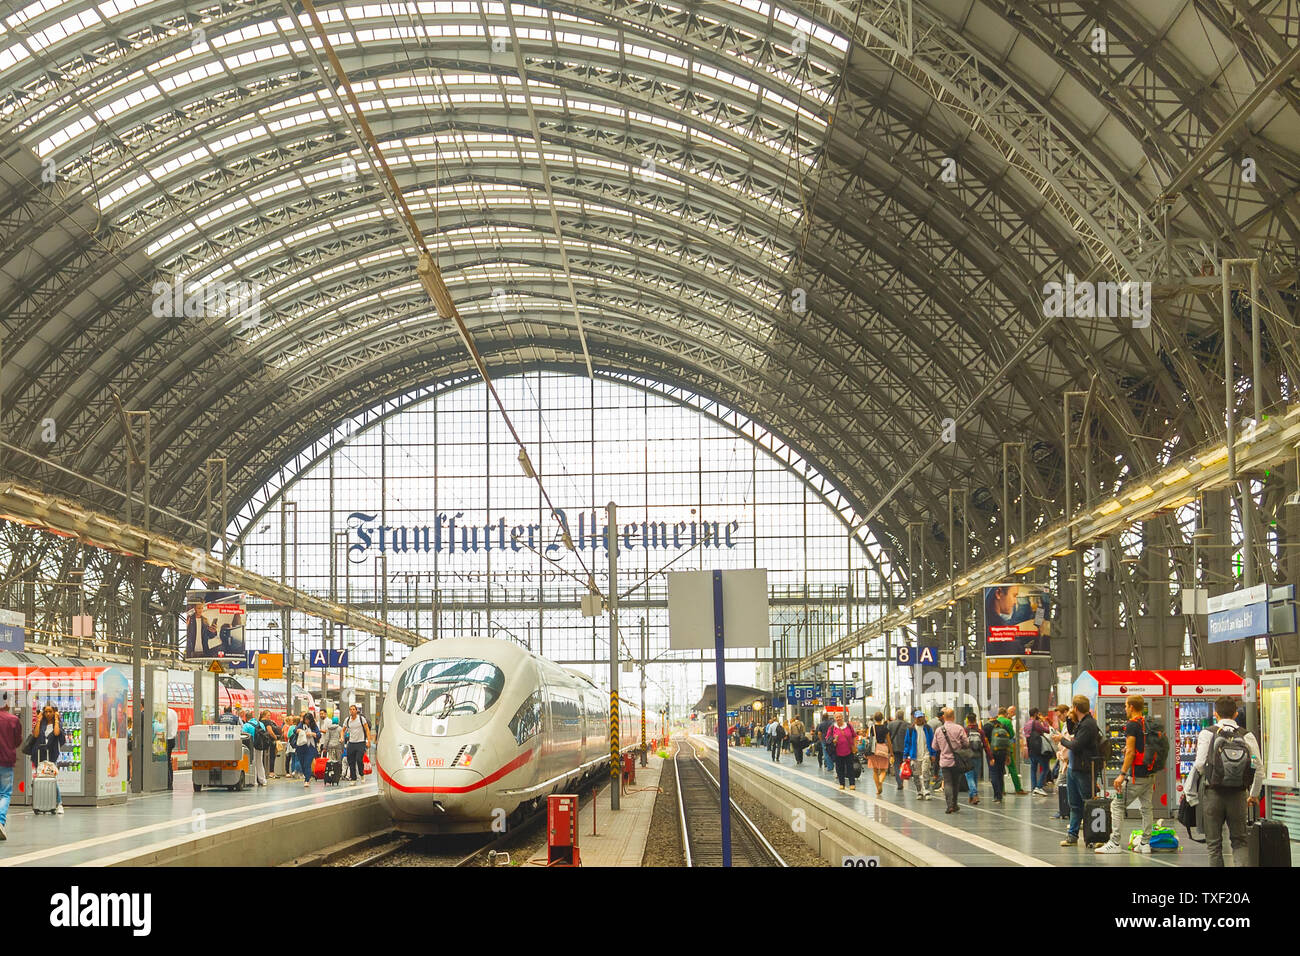 Francfort, Allemagne - le 29 août 2018 : Modern train arrive à Frankfurt am Main train station. Les personnes en attente pour l'embarquement Banque D'Images